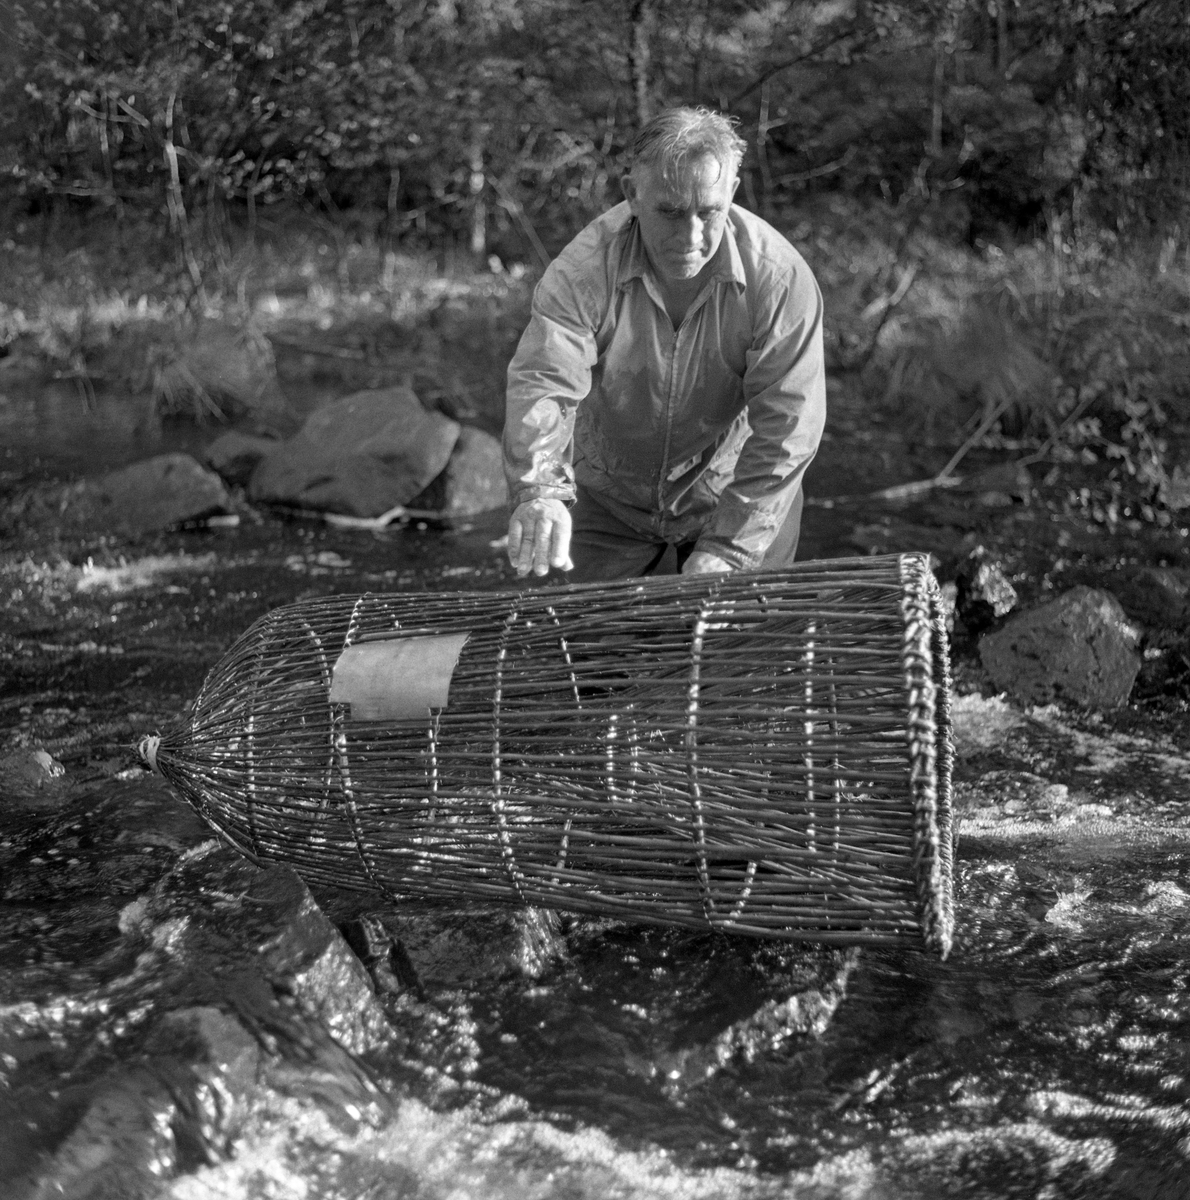 Skogvokter Simen Weideborg setter ut mortkuper i Sagåa, evt. Svartelva nær Rokosjøen, Løten, Hedmark. Mortfiske. Fiske etter mort. Juni 1970.